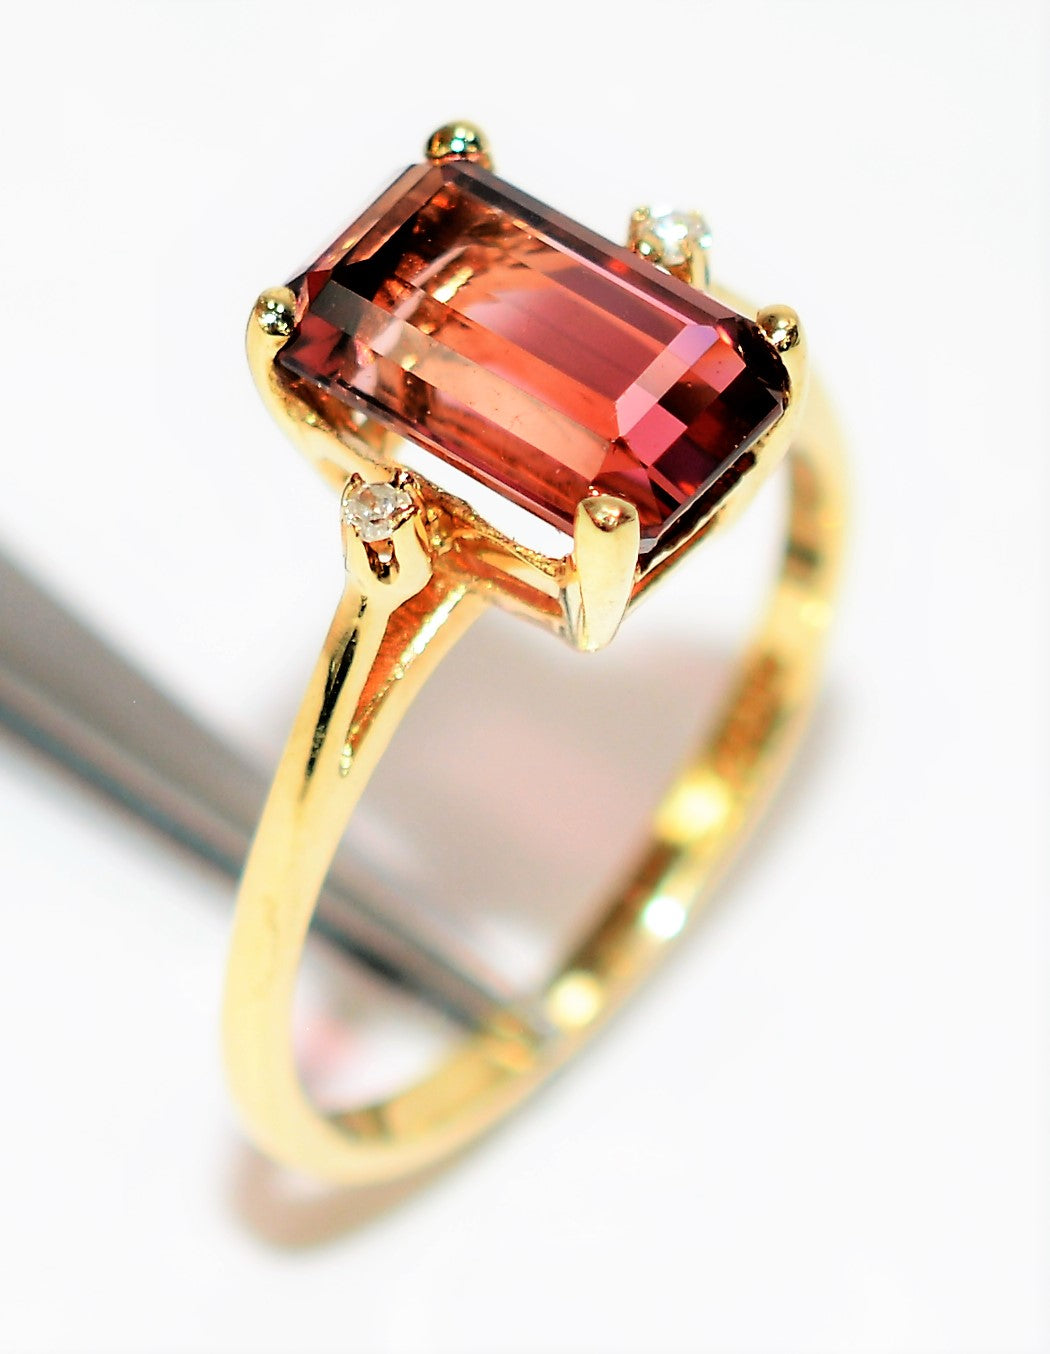 Natural Bi-Color Pink Tourmaline & Diamond Ring 10K Solid Gold 2.85tcw Engagement Ring Statement Ring Women's Ring Cocktail Ring Gemstone Ring